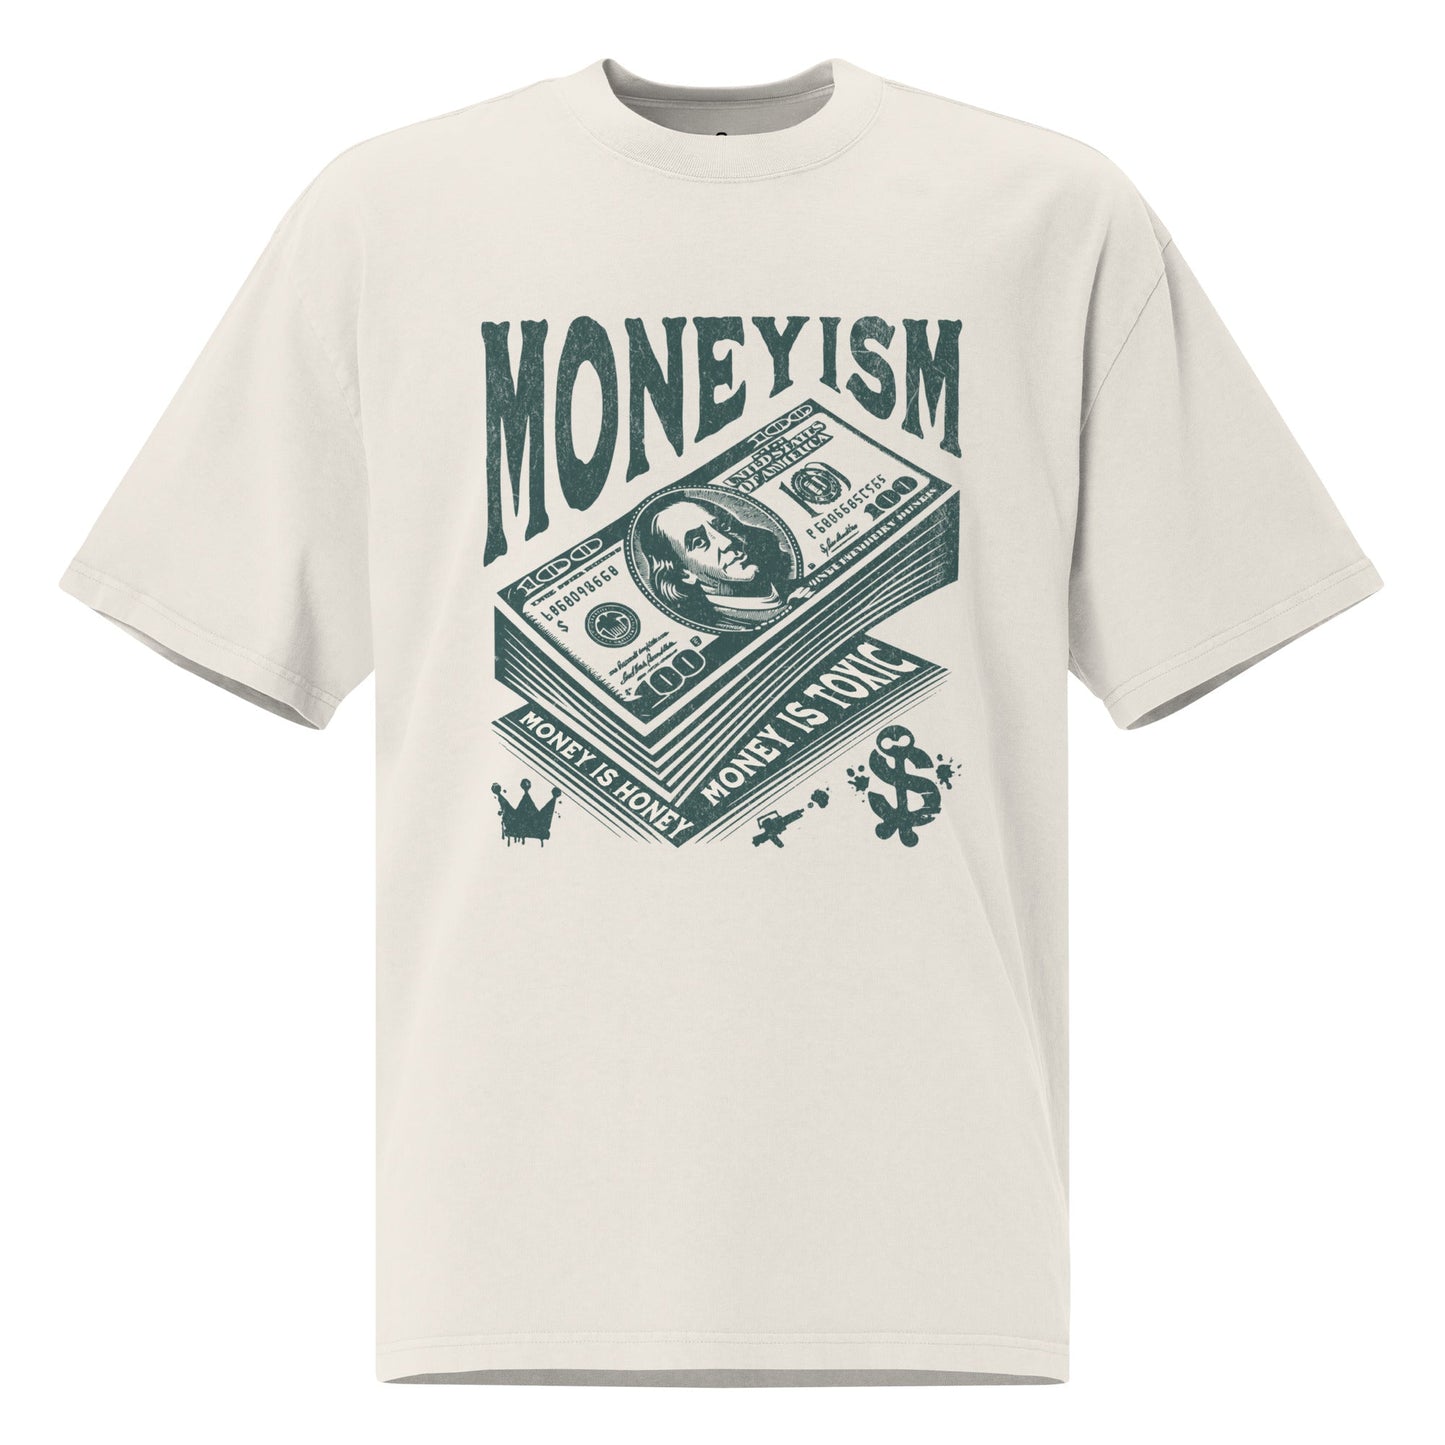 Moneyism Oversized t-shirt - Wet Sundays